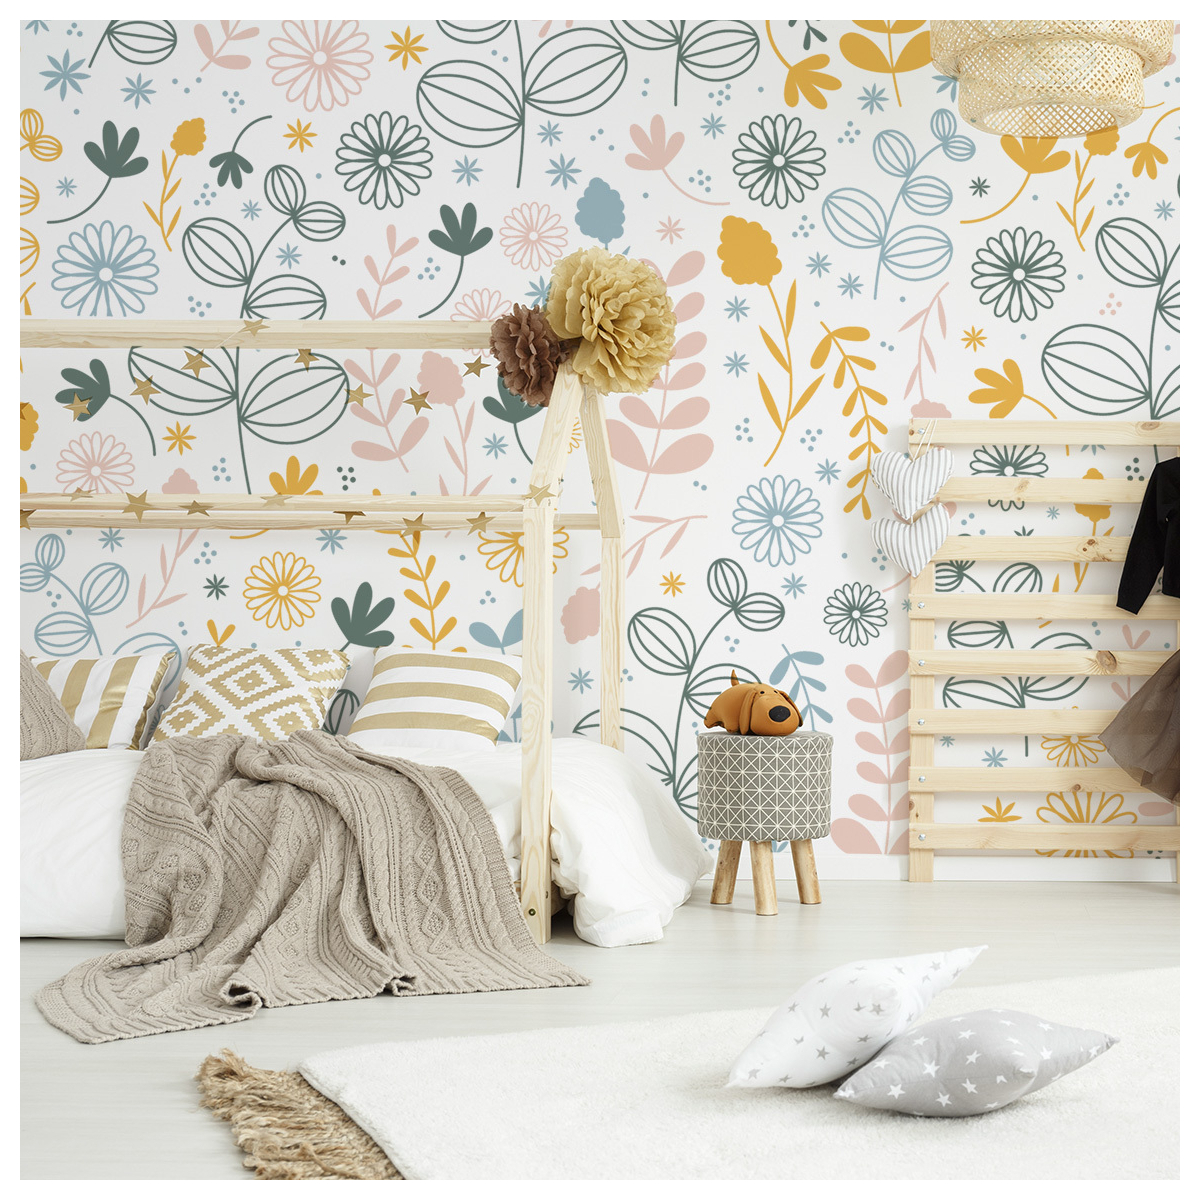 Cueillette wallpaper for children's room decoration - ACTE-DECO